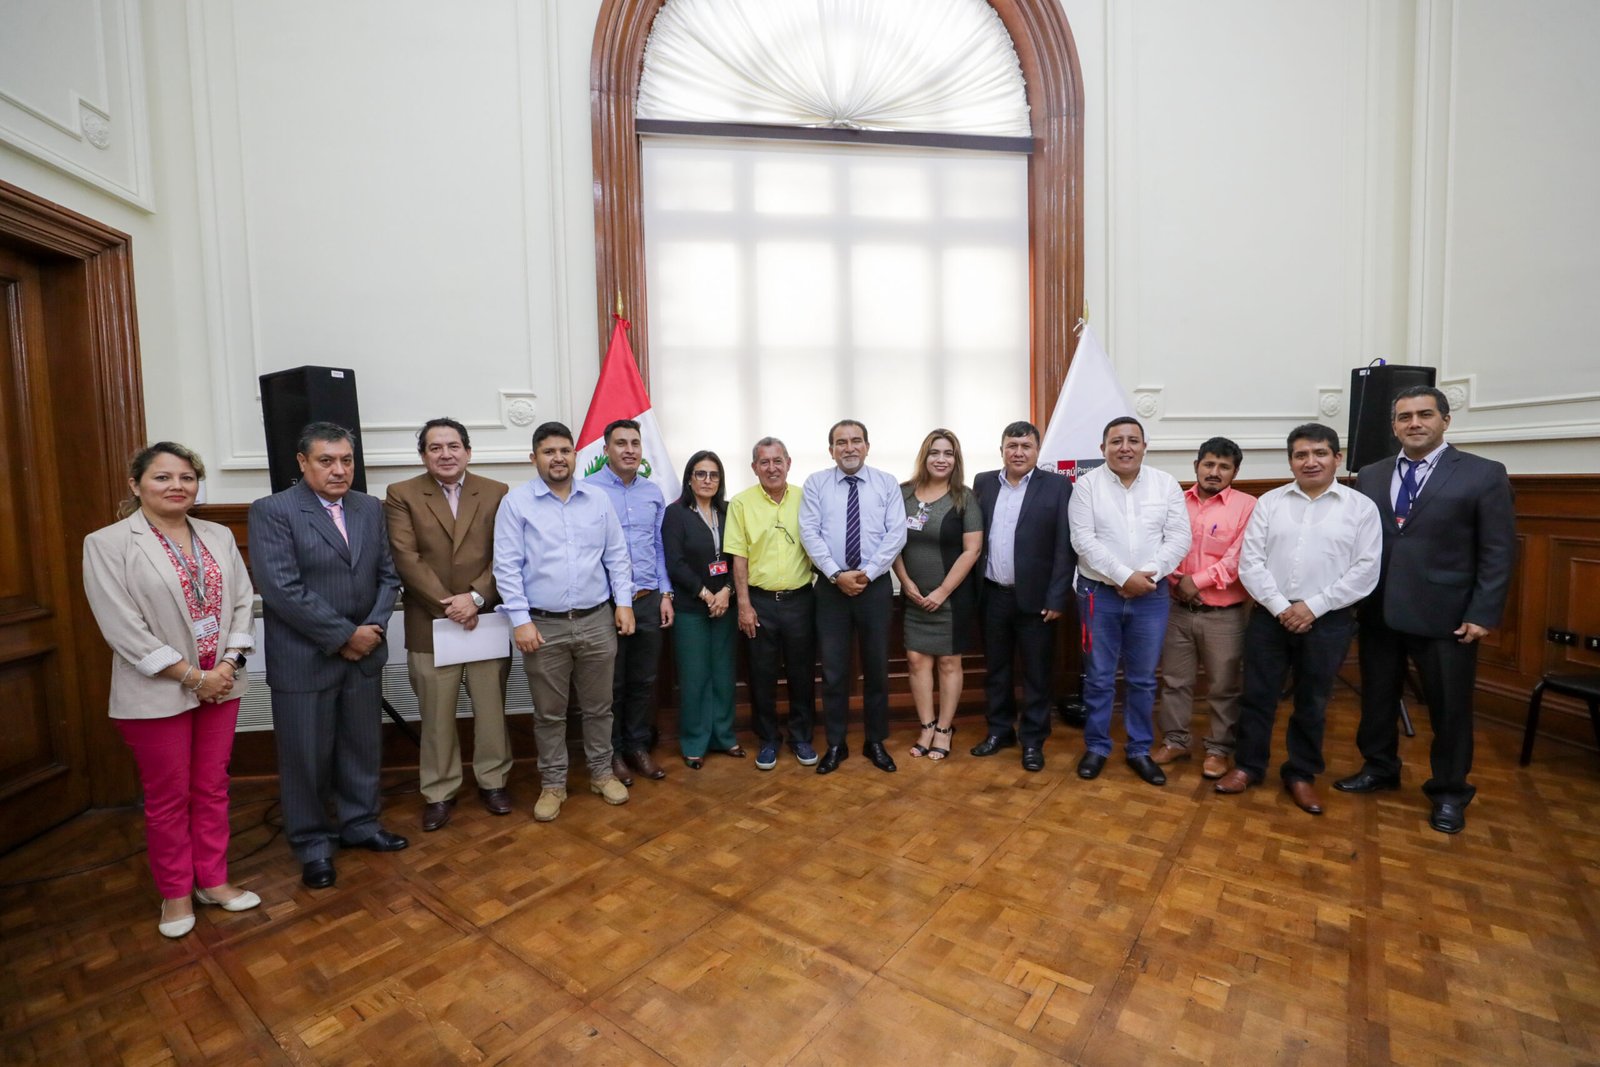 Alcalde De Huánuco Gestiona Financiamiento De Proyectos Tu Diario Huánuco 0252